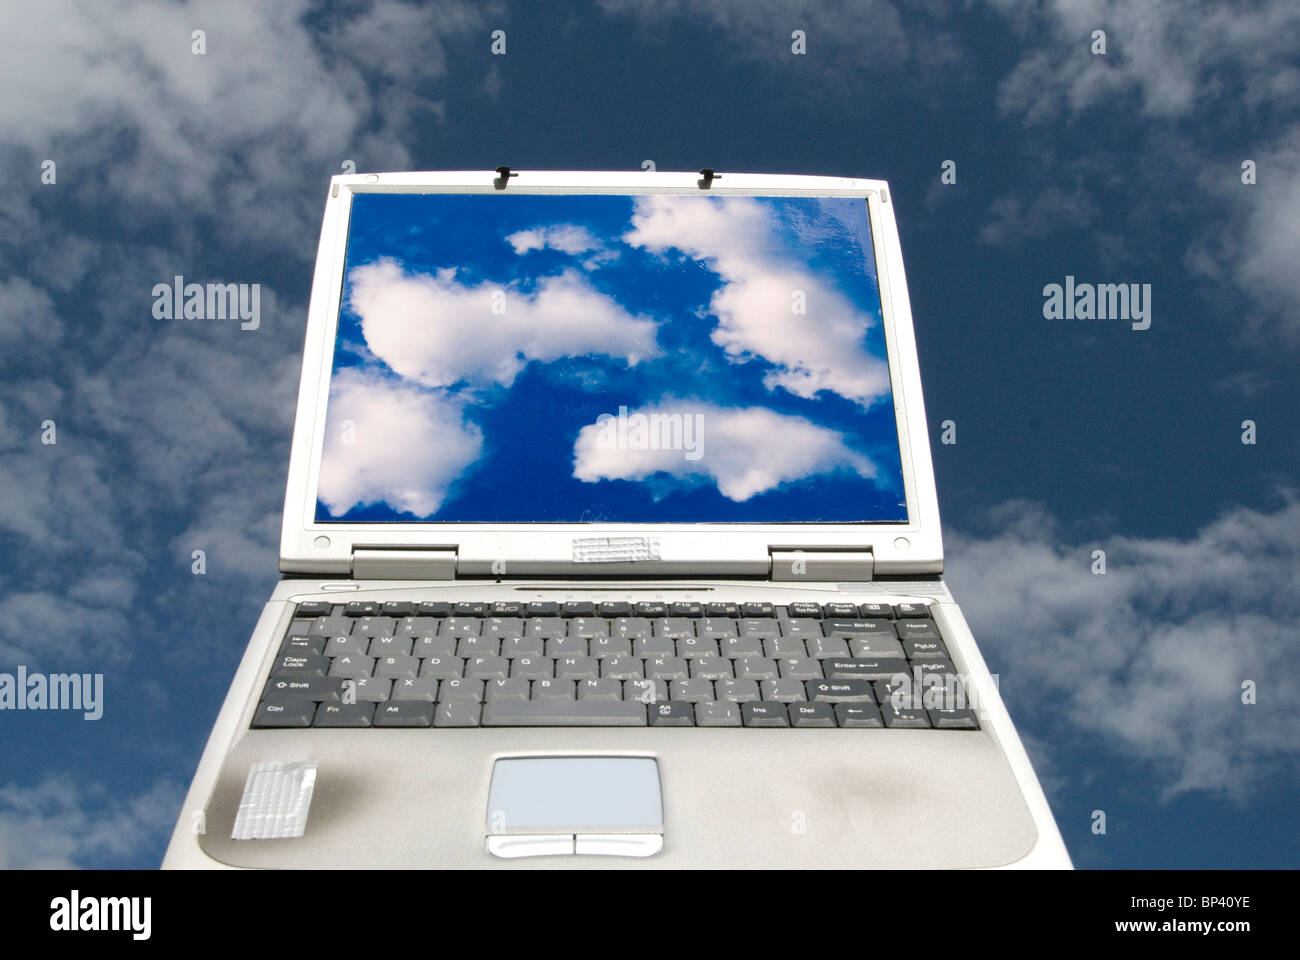 Ordenador portátil con imágenes de nubes y nubes en el fondo que representa el cloud computing Foto de stock